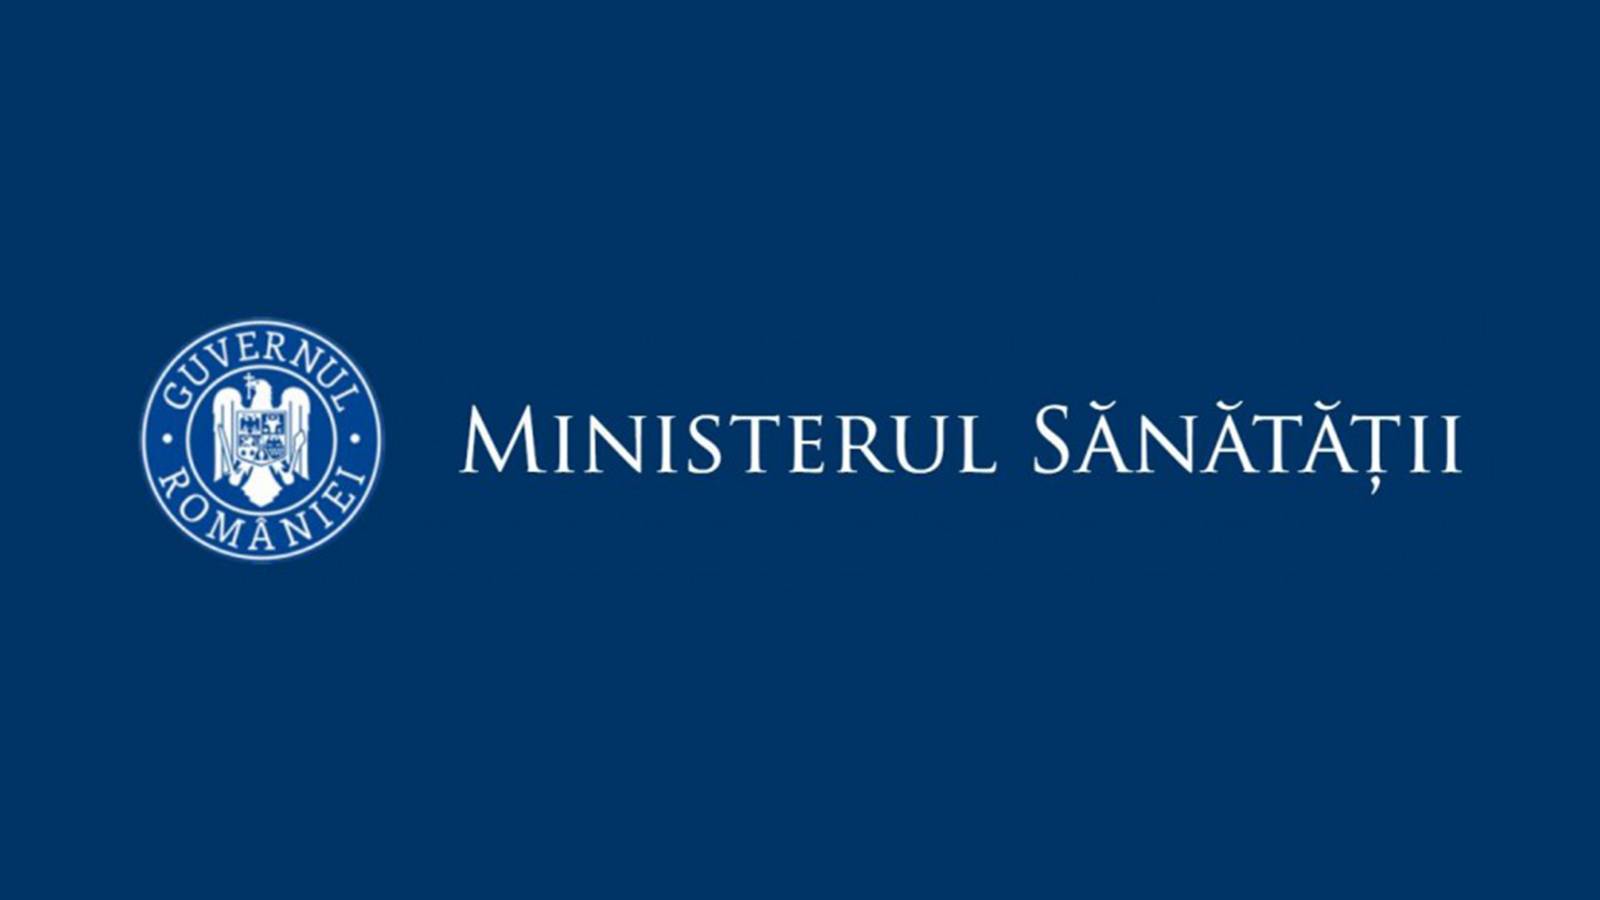 Ministerul Sanatatii Crestere vaccinari Romania